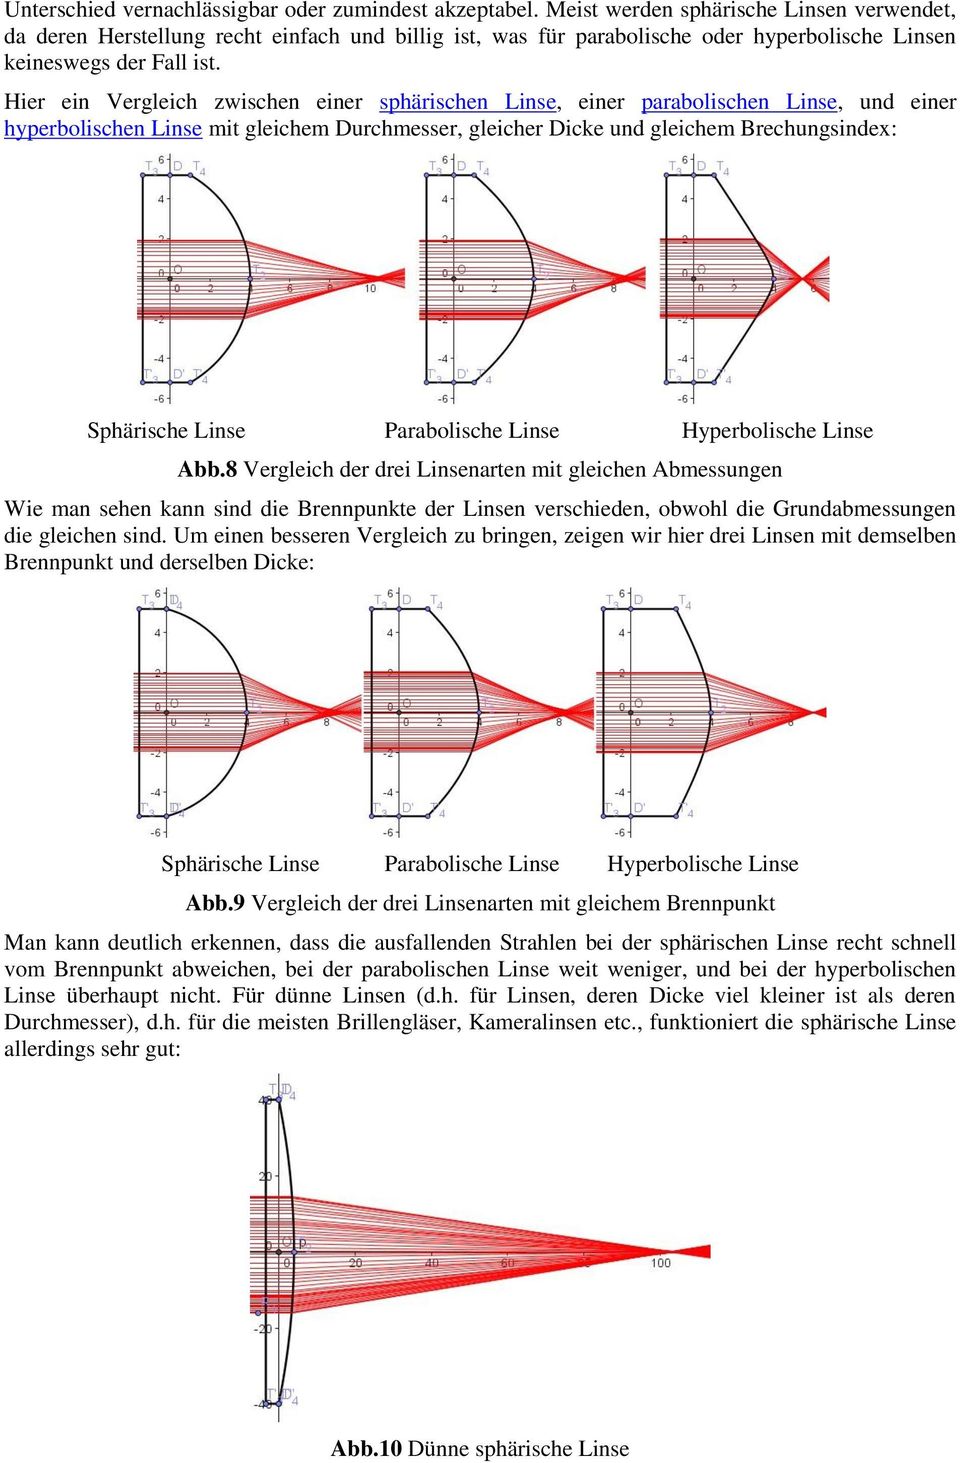 Hier ein Vergleich zwischen einer sphärischen Linse, einer parabolischen Linse, und einer hyperbolischen Linse mit gleichem Durchmesser, gleicher Dicke und gleichem Brechungsindex: Sphärische Linse